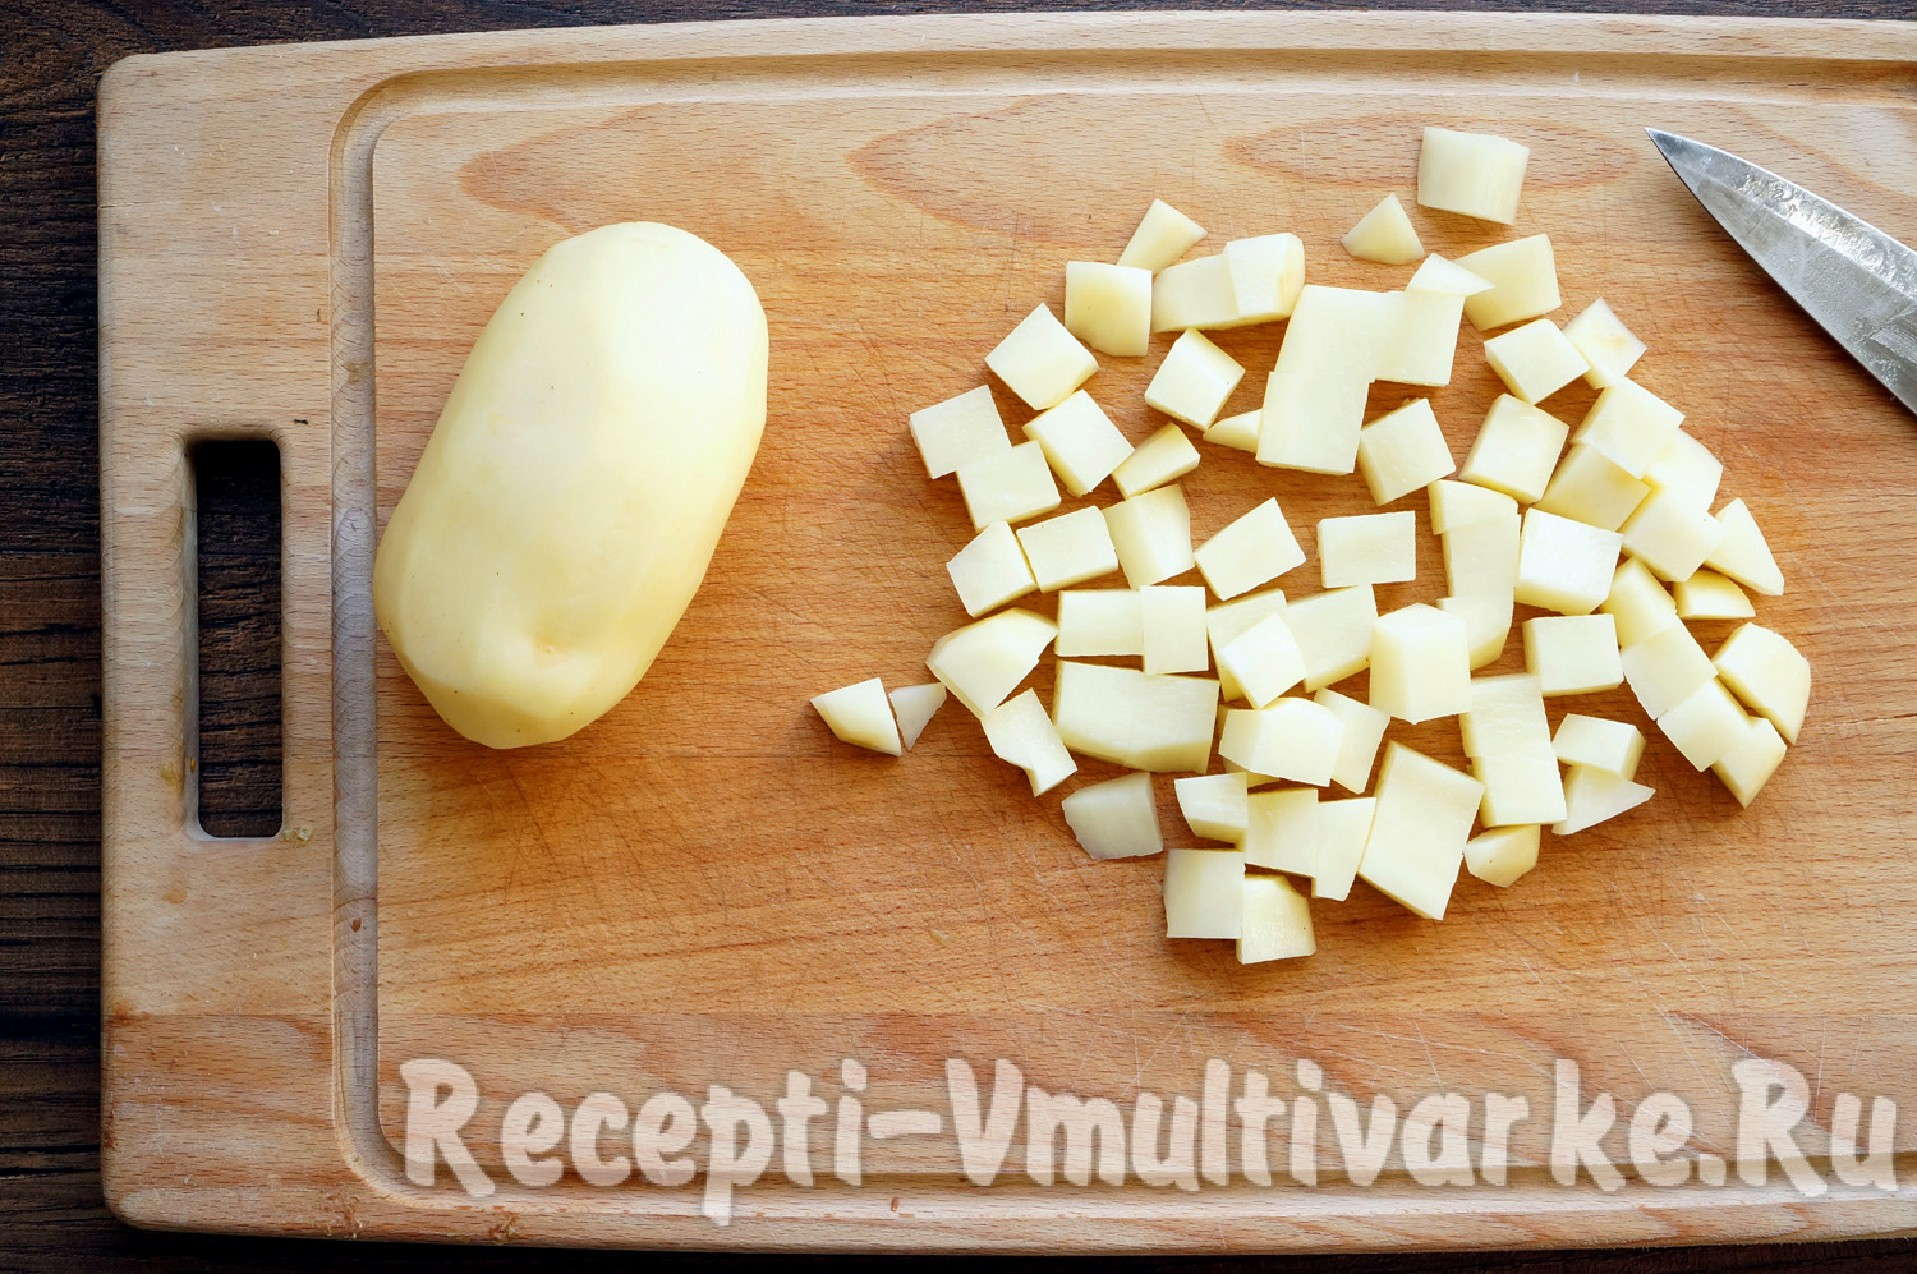 Нарезать квадратиками. Нарезка картофеля. Нарезанная картошка. Картофель нарезанный кубиками. Картошка порезанная.